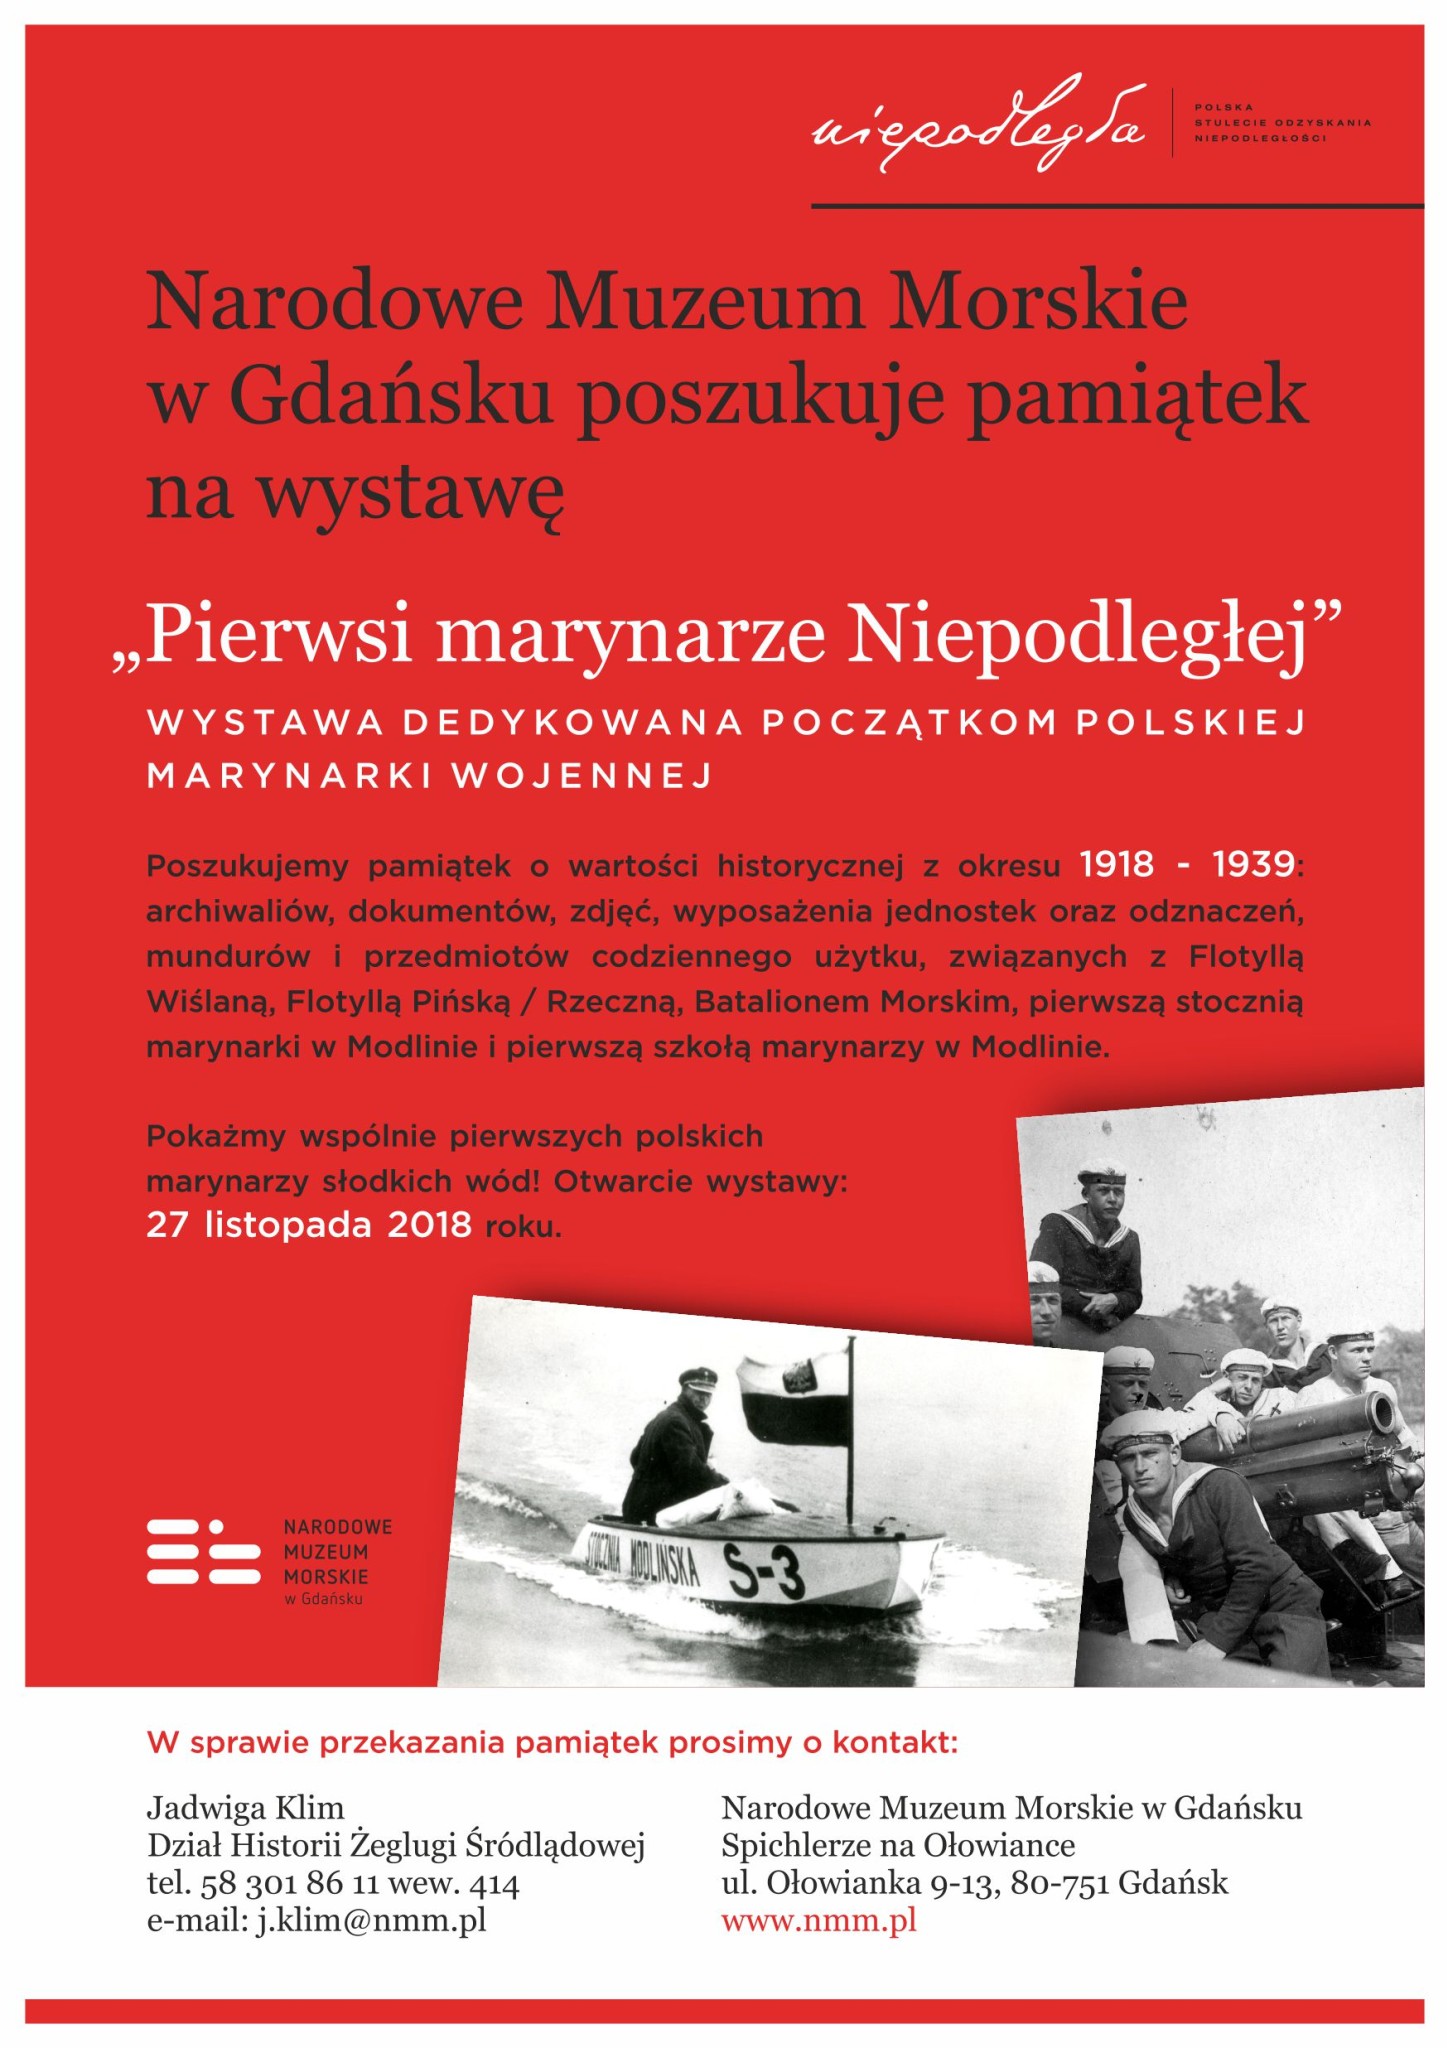 Plakat o zbiórce pamiątek na wystawę "Pierwsi marynarze Niepodległej"